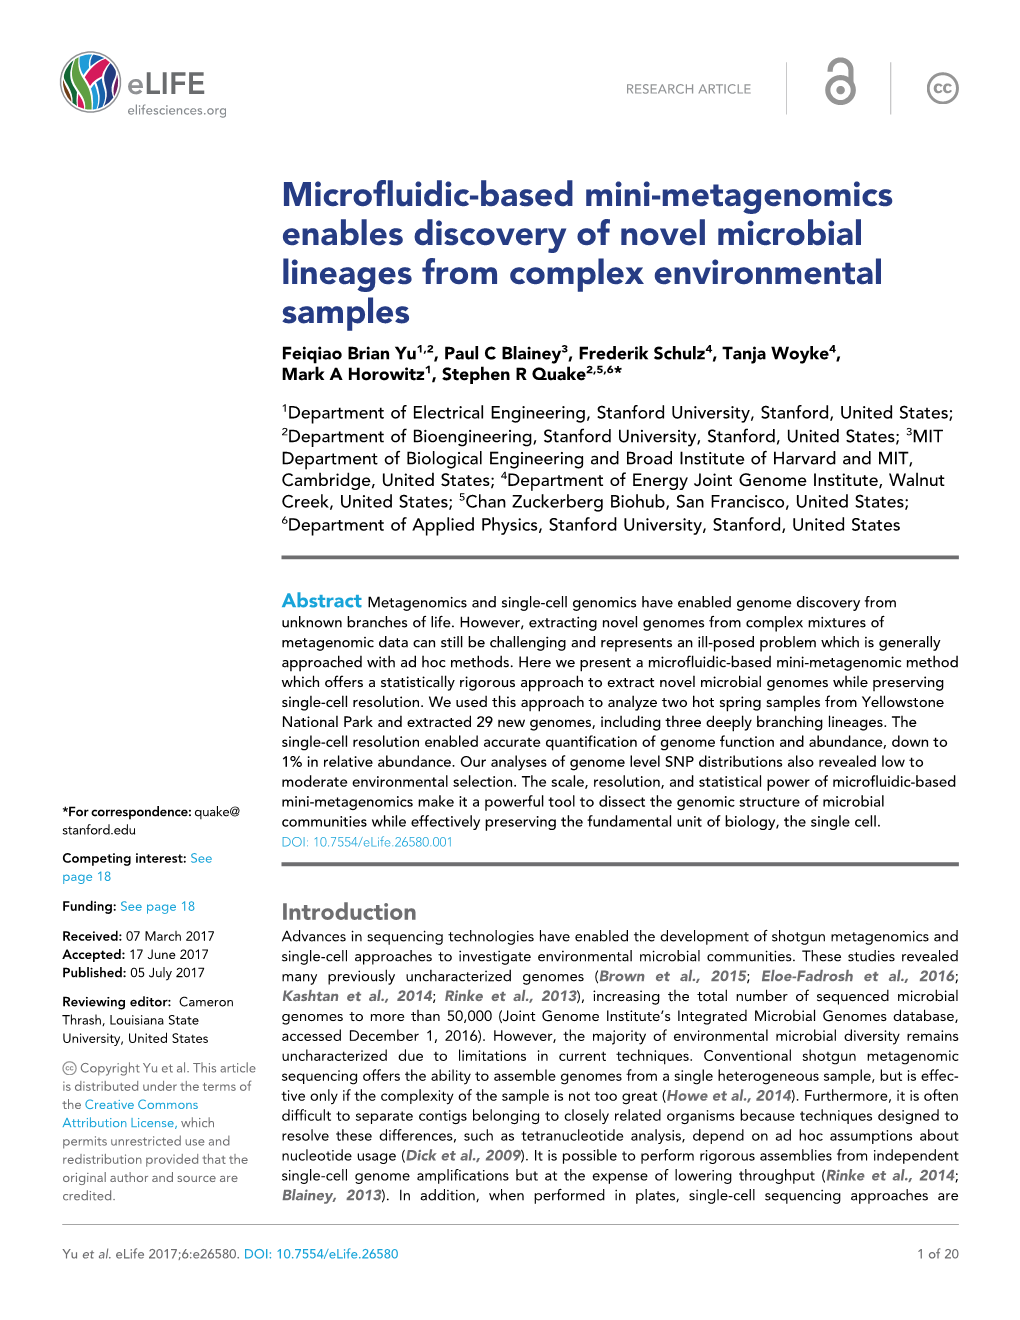 Microfluidic-Based Mini-Metagenomics